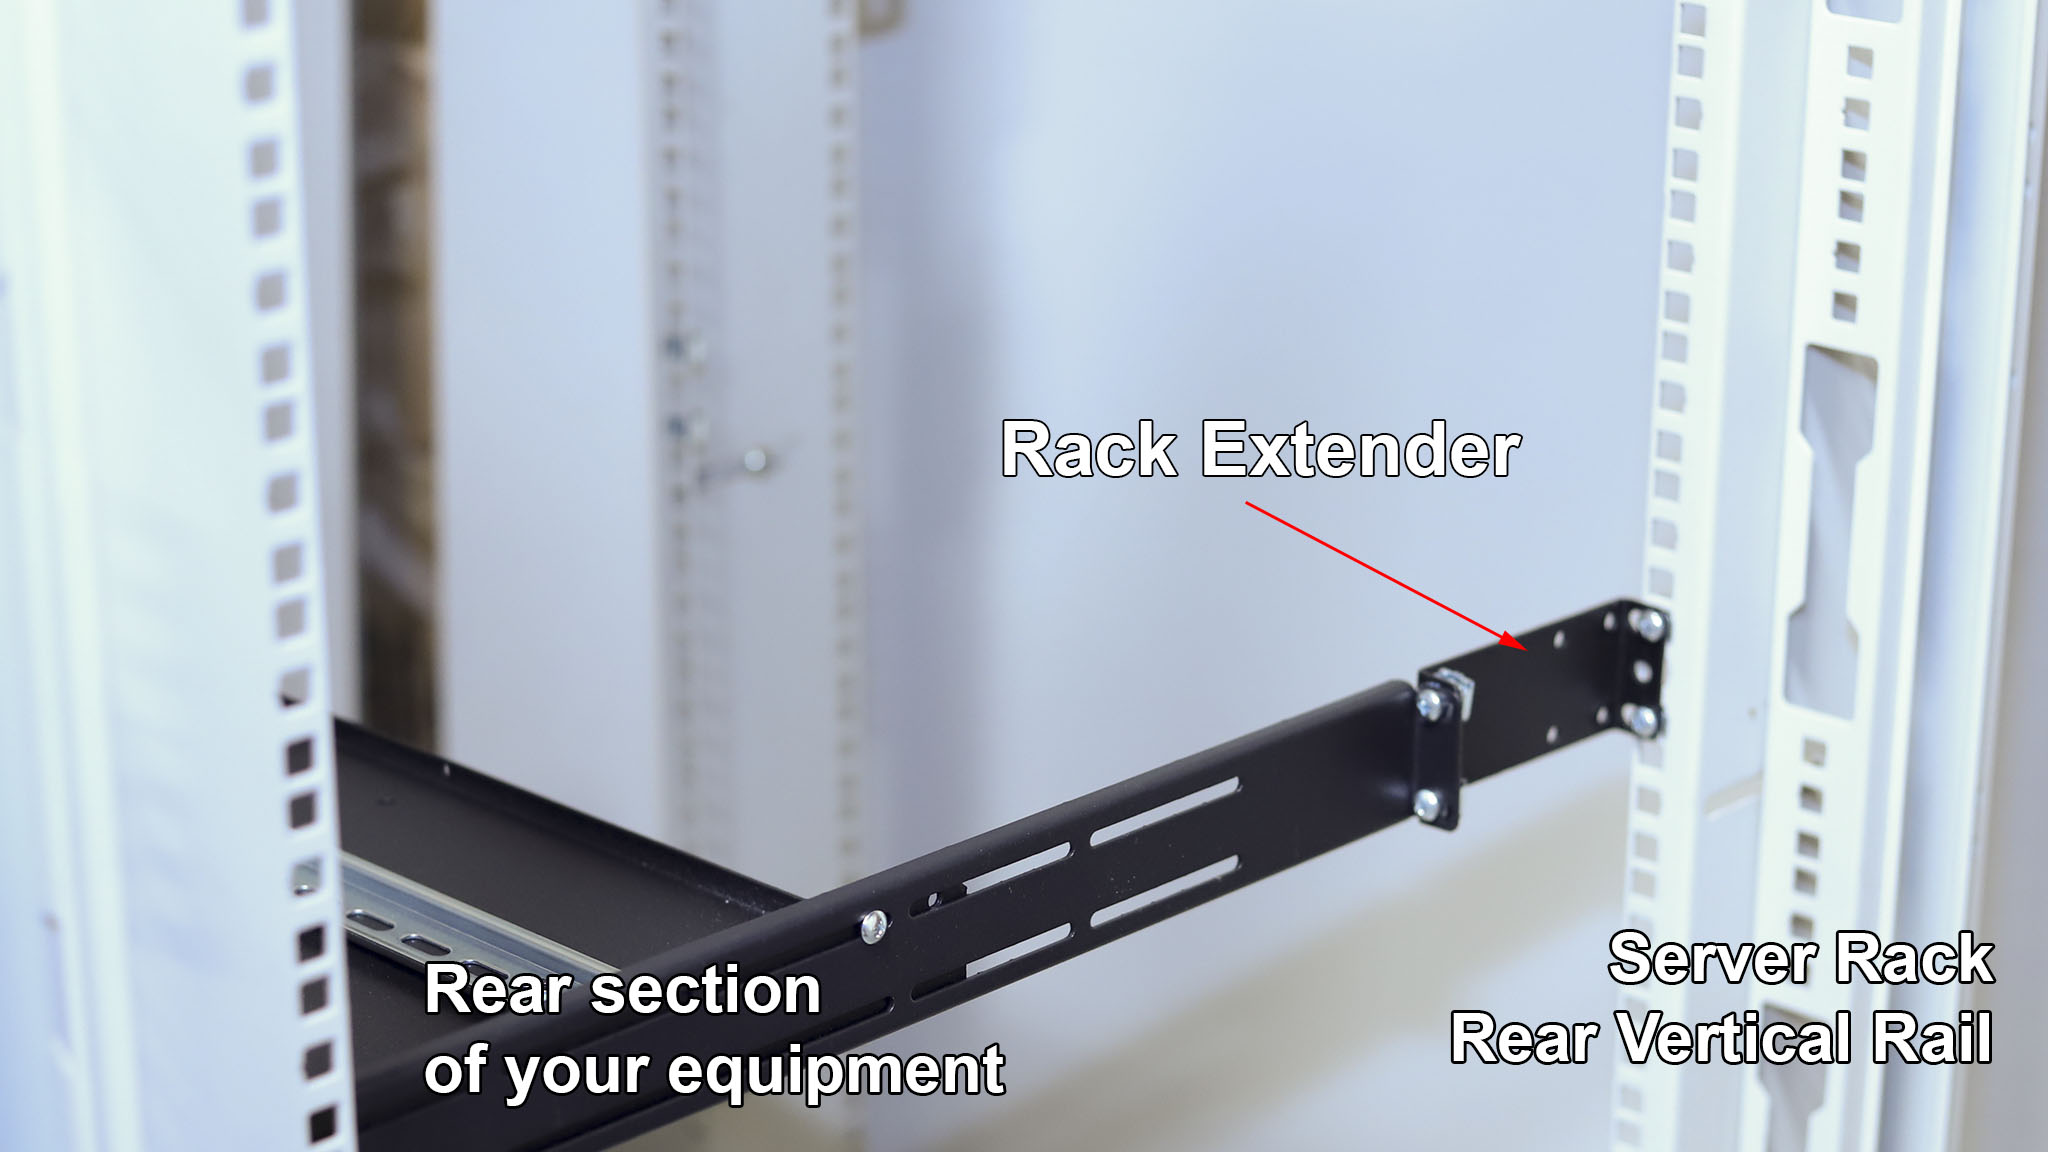 What is IAB102V10-2U rack extender